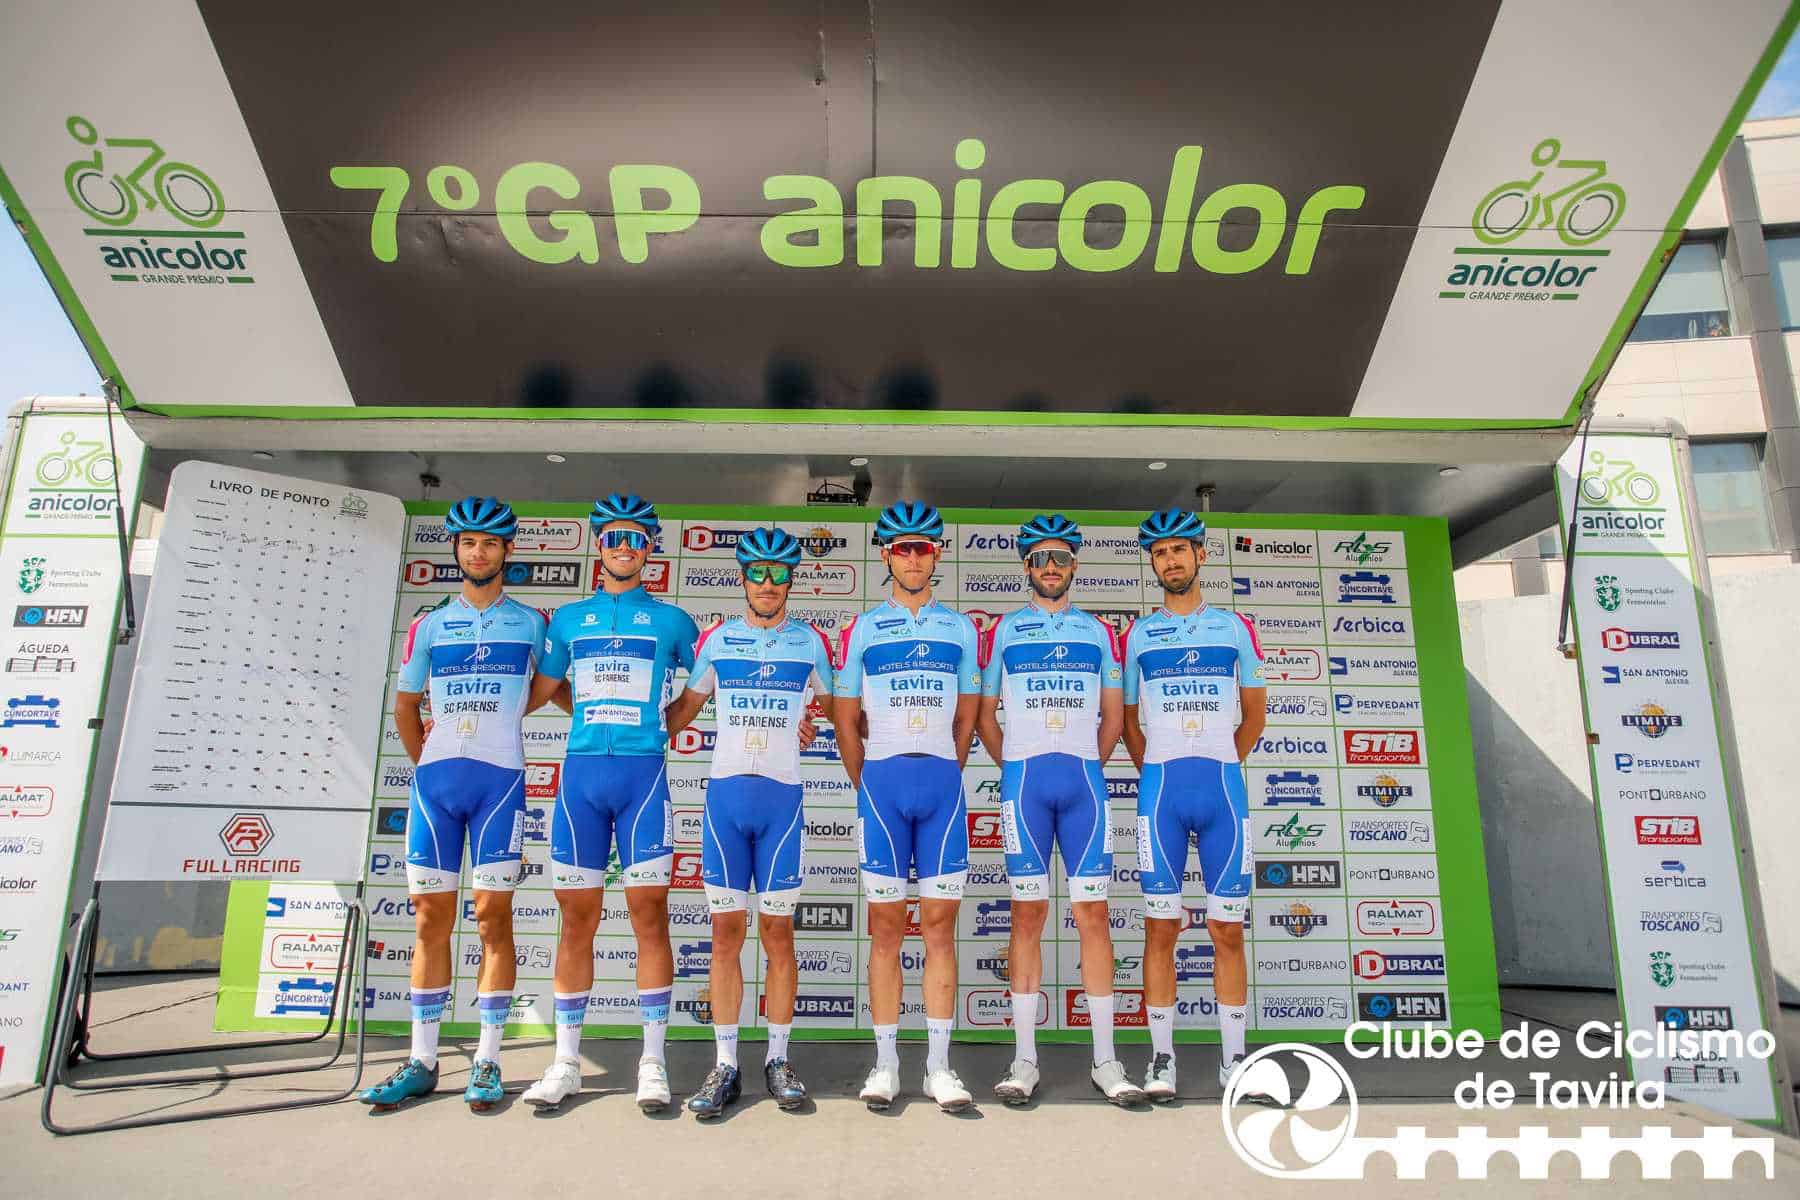 Clube de Ciclismo de Tavira - 7 grande premio anicolor8